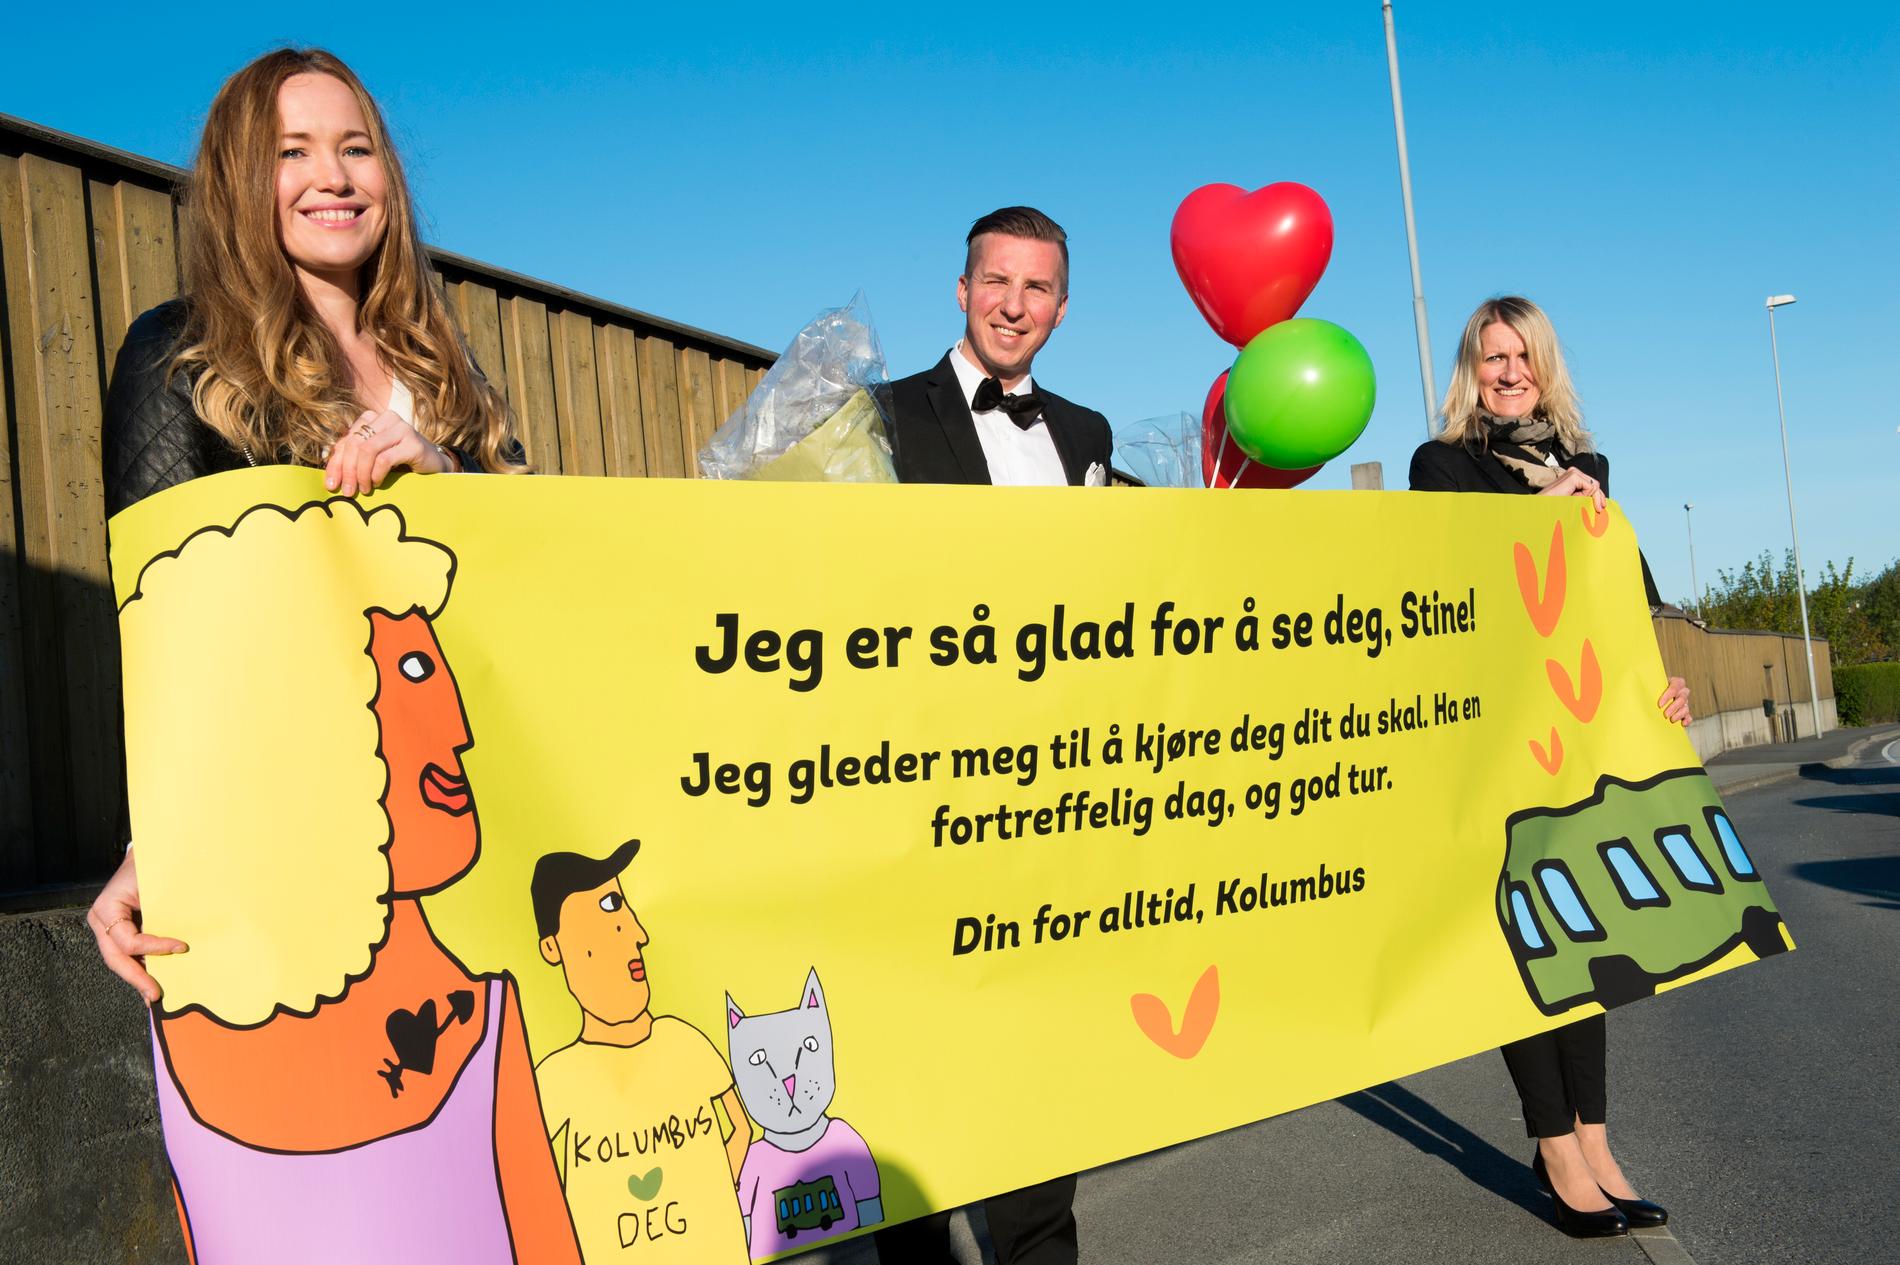 VElKOMSTKOMITE: Ballonger, banner og finstas på plass for å ønske Stine Serigstad en god busstur.